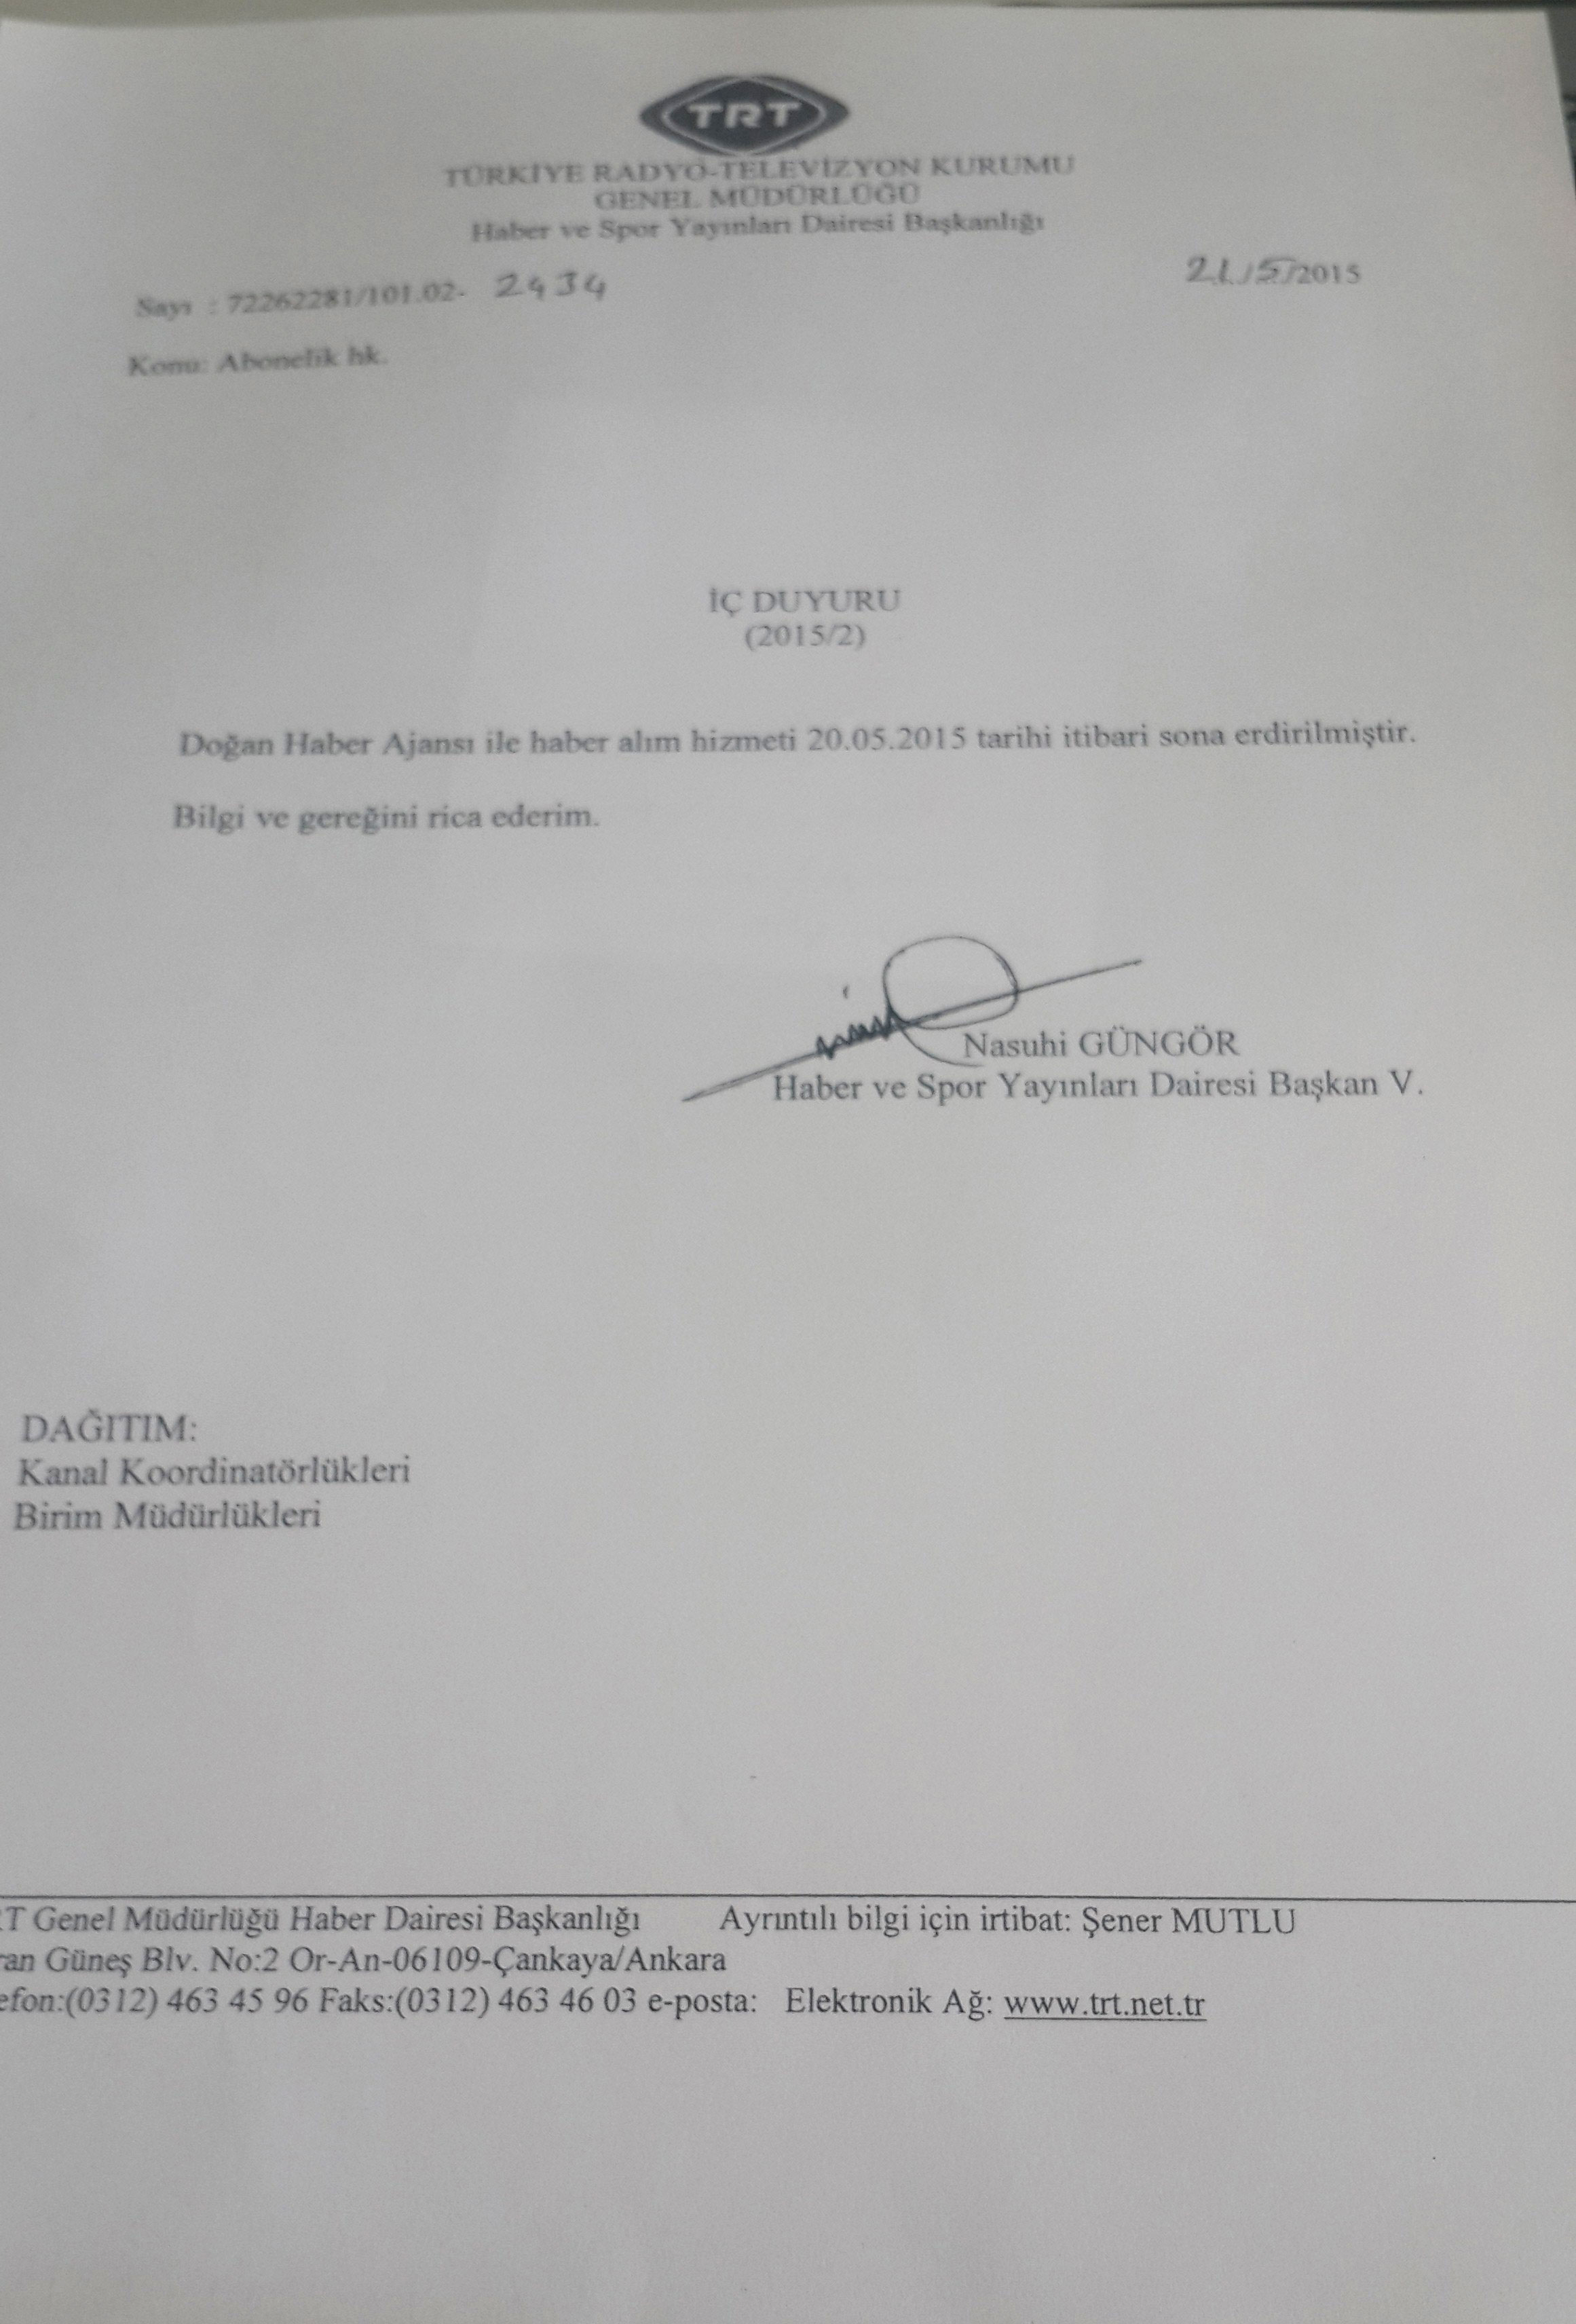 TRT'nin DHA ile olan sözleşmesini iptal ettiğini gösteren belge